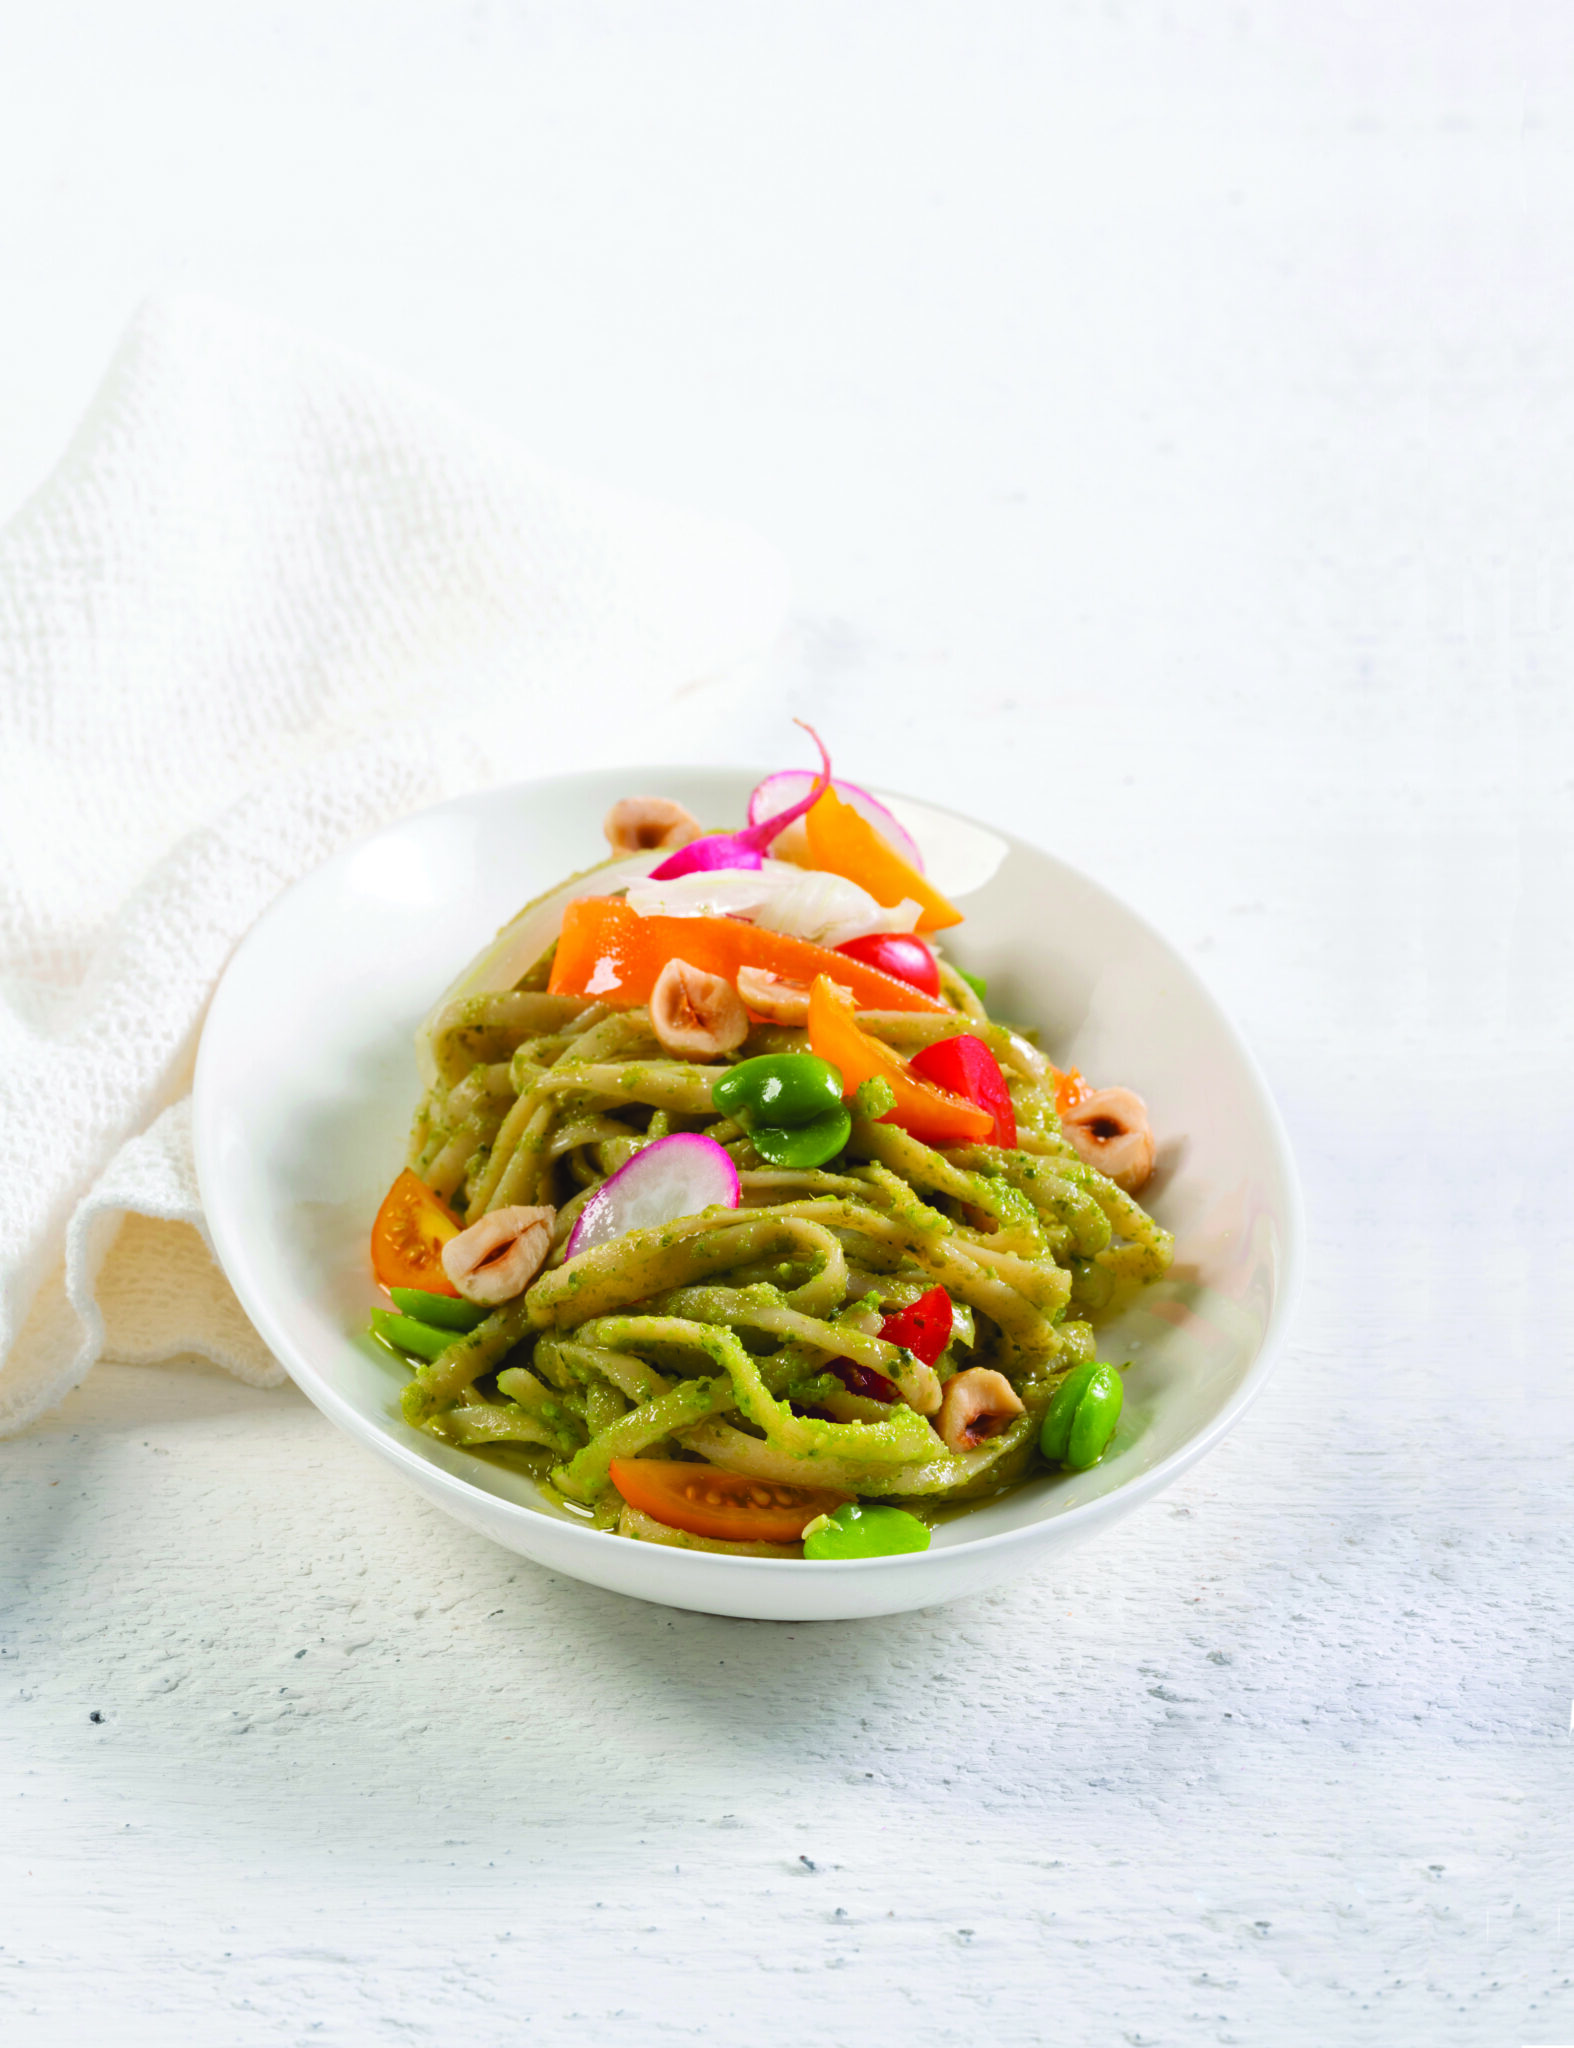 Surgital - Ricette - Linguine di verdura, piselli e lenticchie in insalata fresca dell'orto con pesto di fave e nocciole tostate